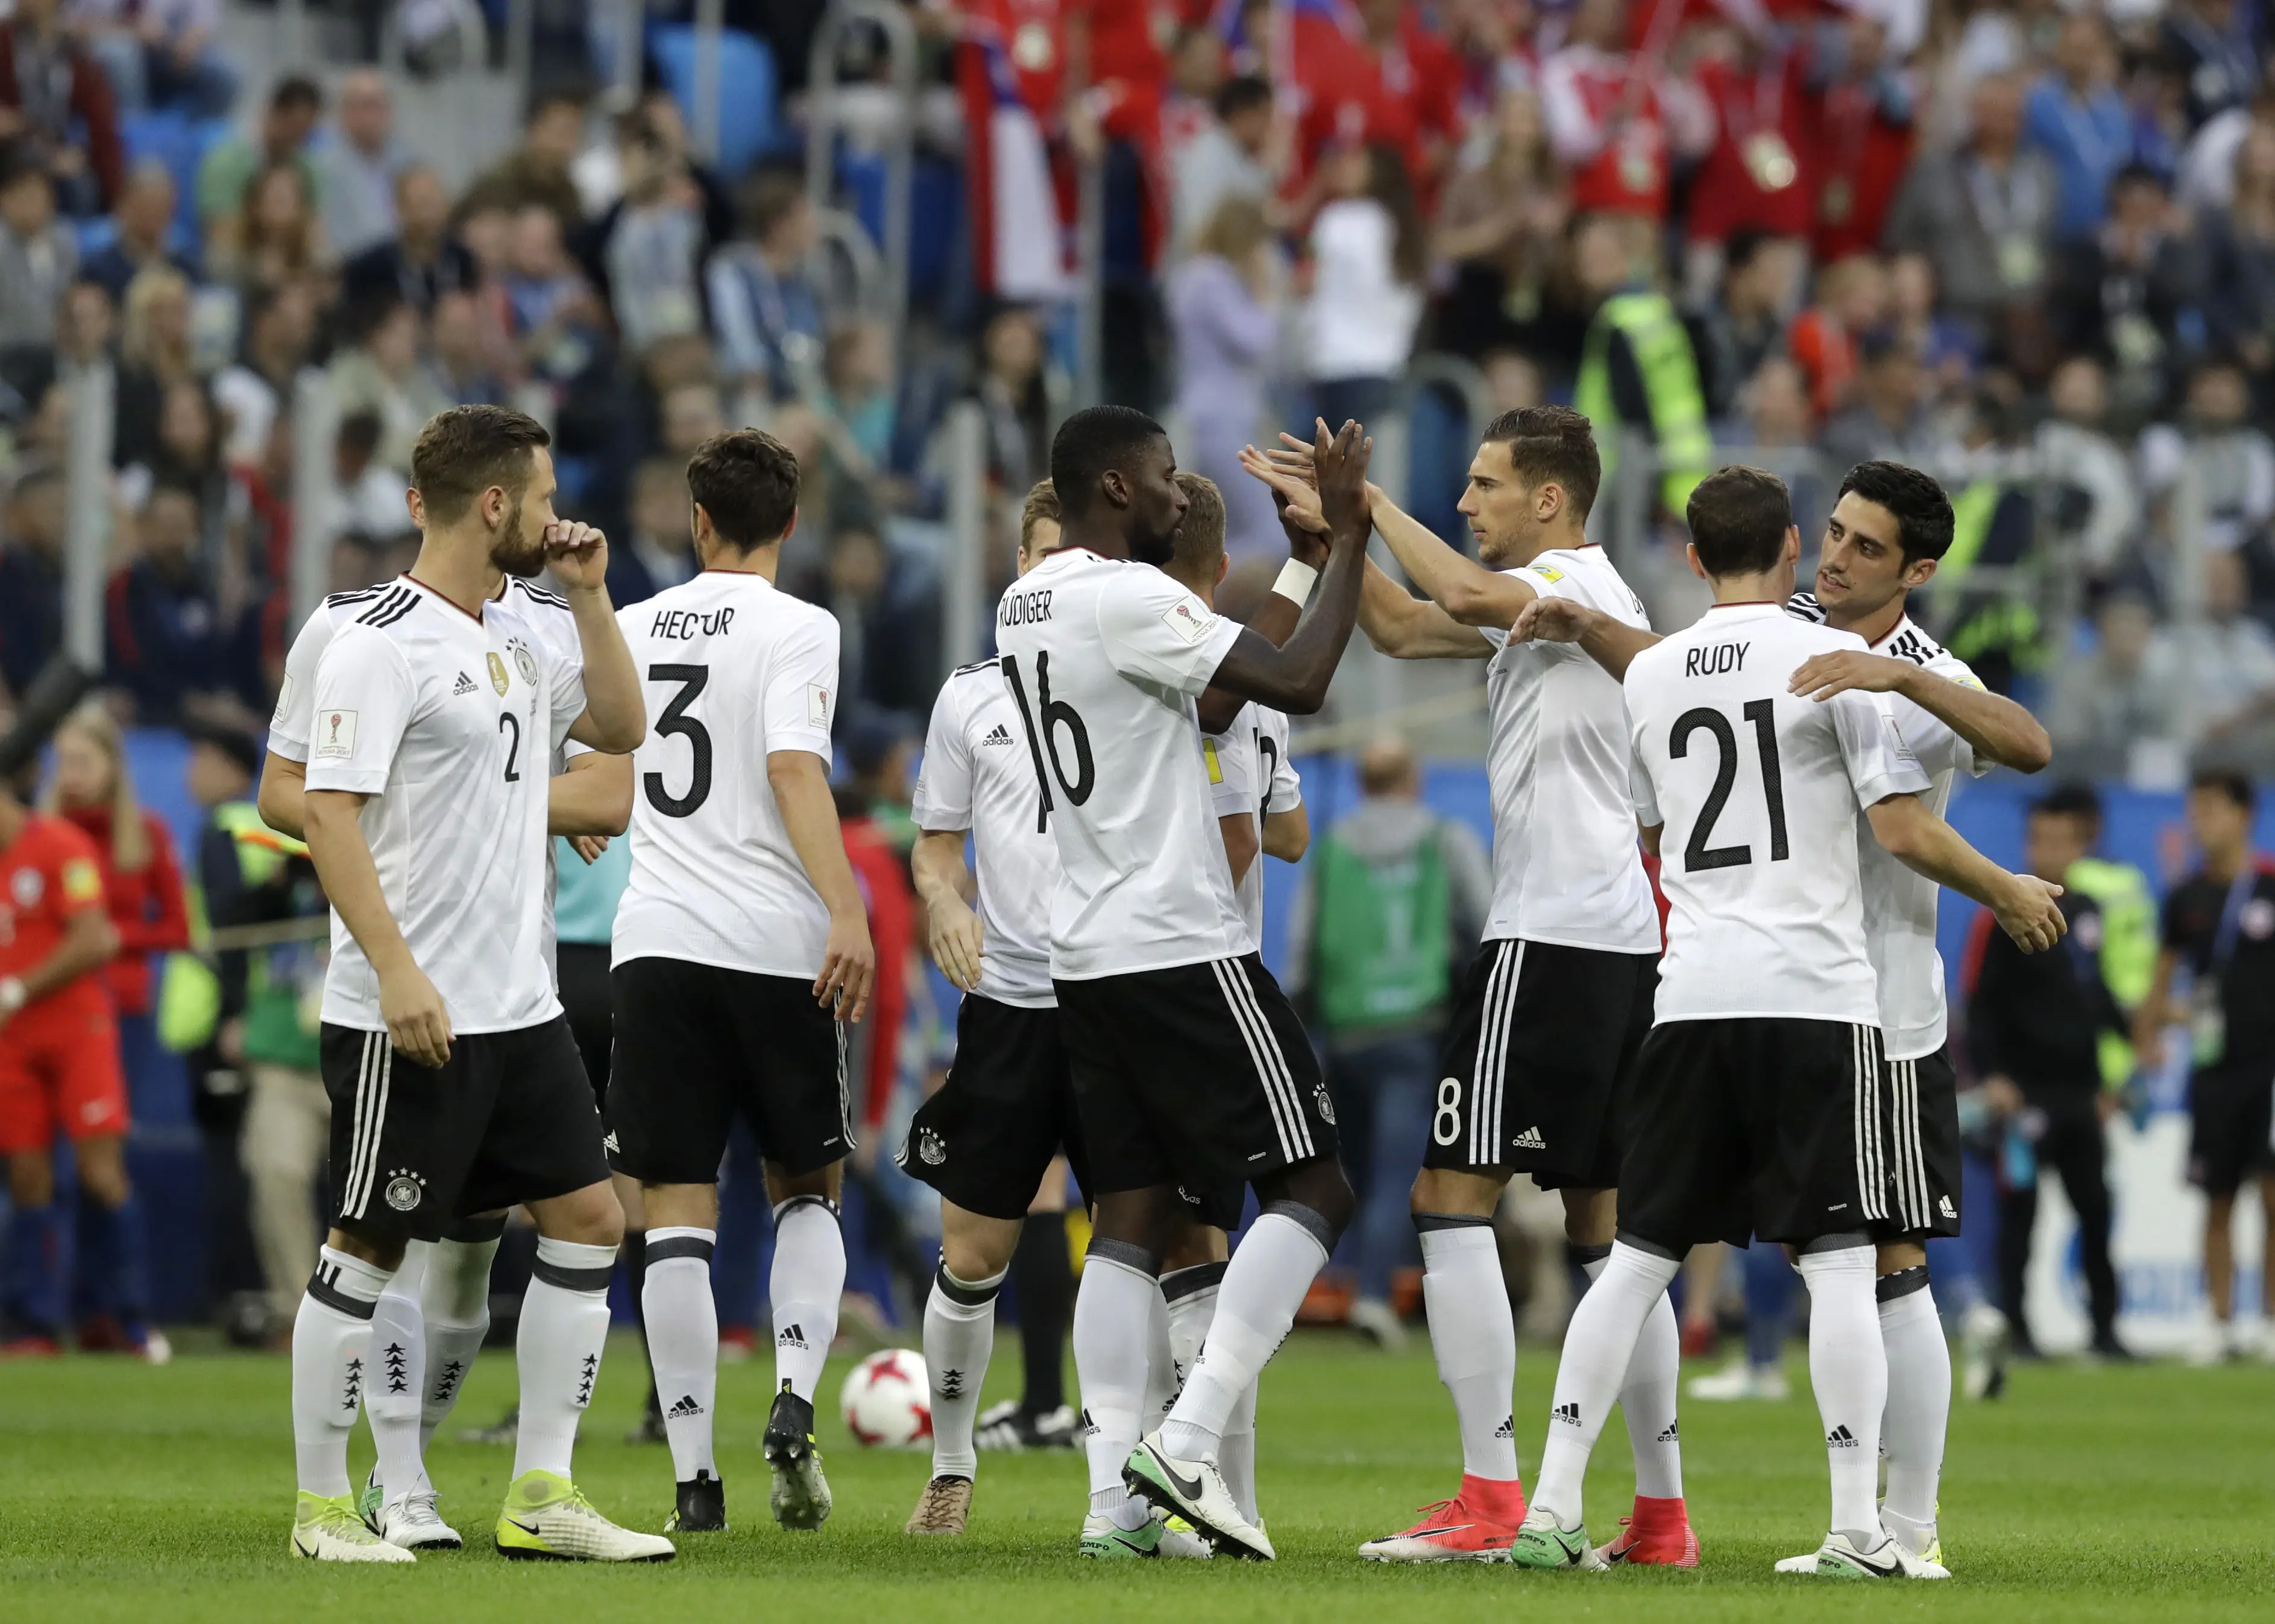 Pemain Jerman rayakan gol dari Lars Stindel di final Piala Konfederasi 2017 (AP Photo/Thanassis Stavrakis)